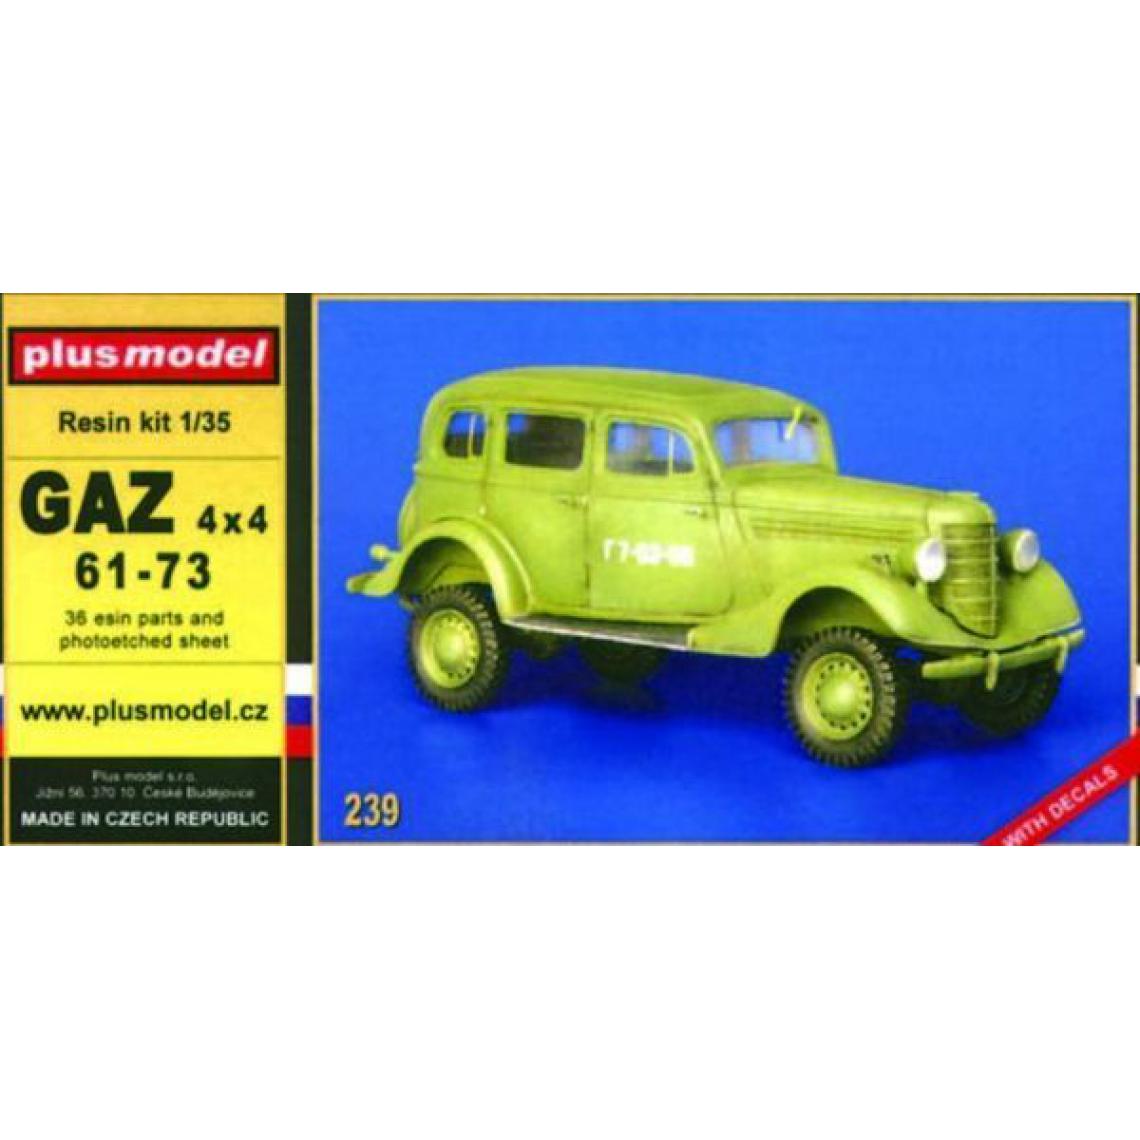 Plus Model - GAZ 4x4 61-73 - 1:35e - Plus model - Accessoires et pièces